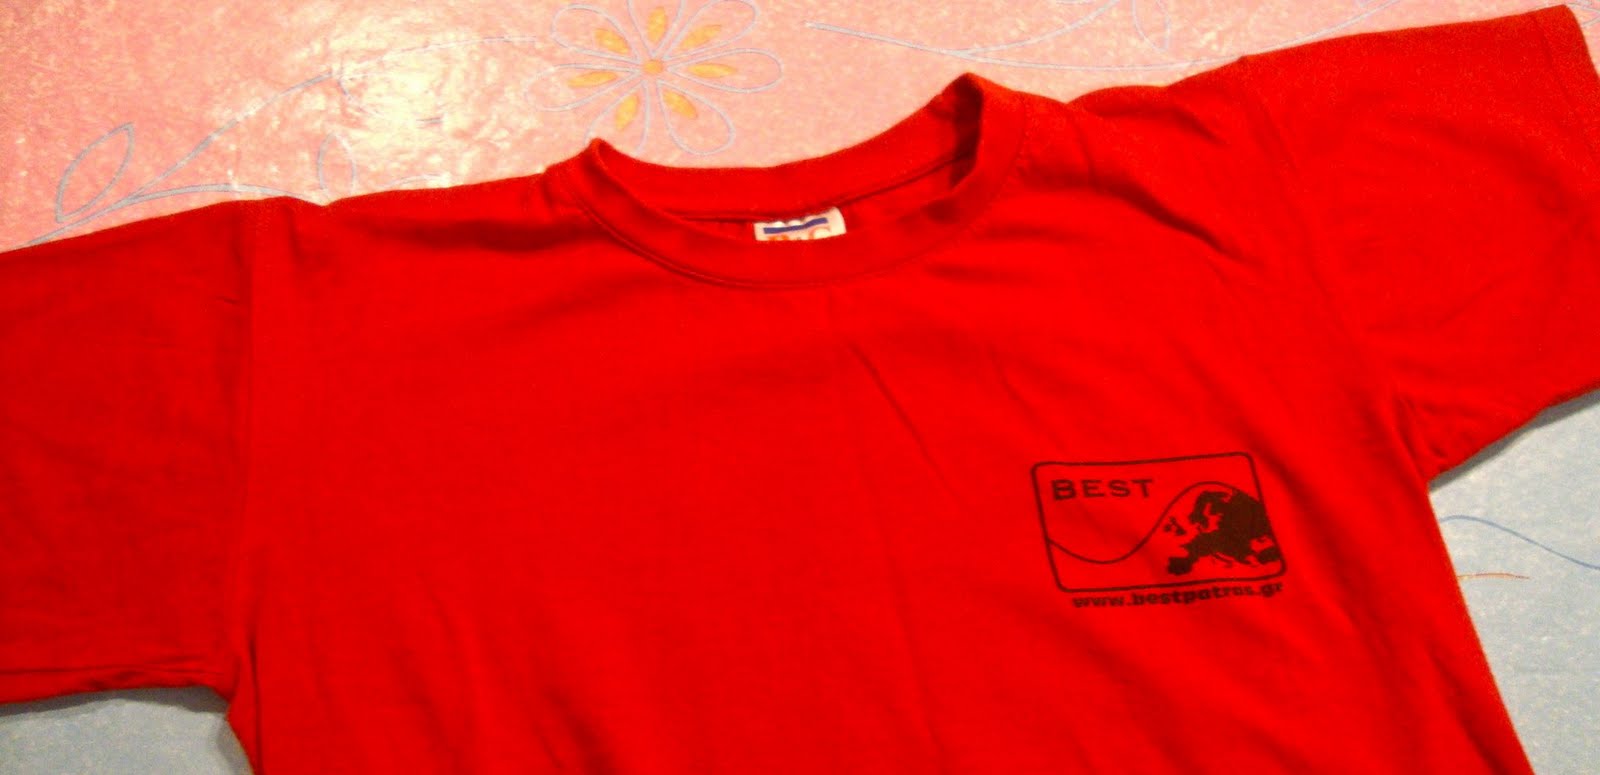 Über den Traum: Altering BEST T-shirts